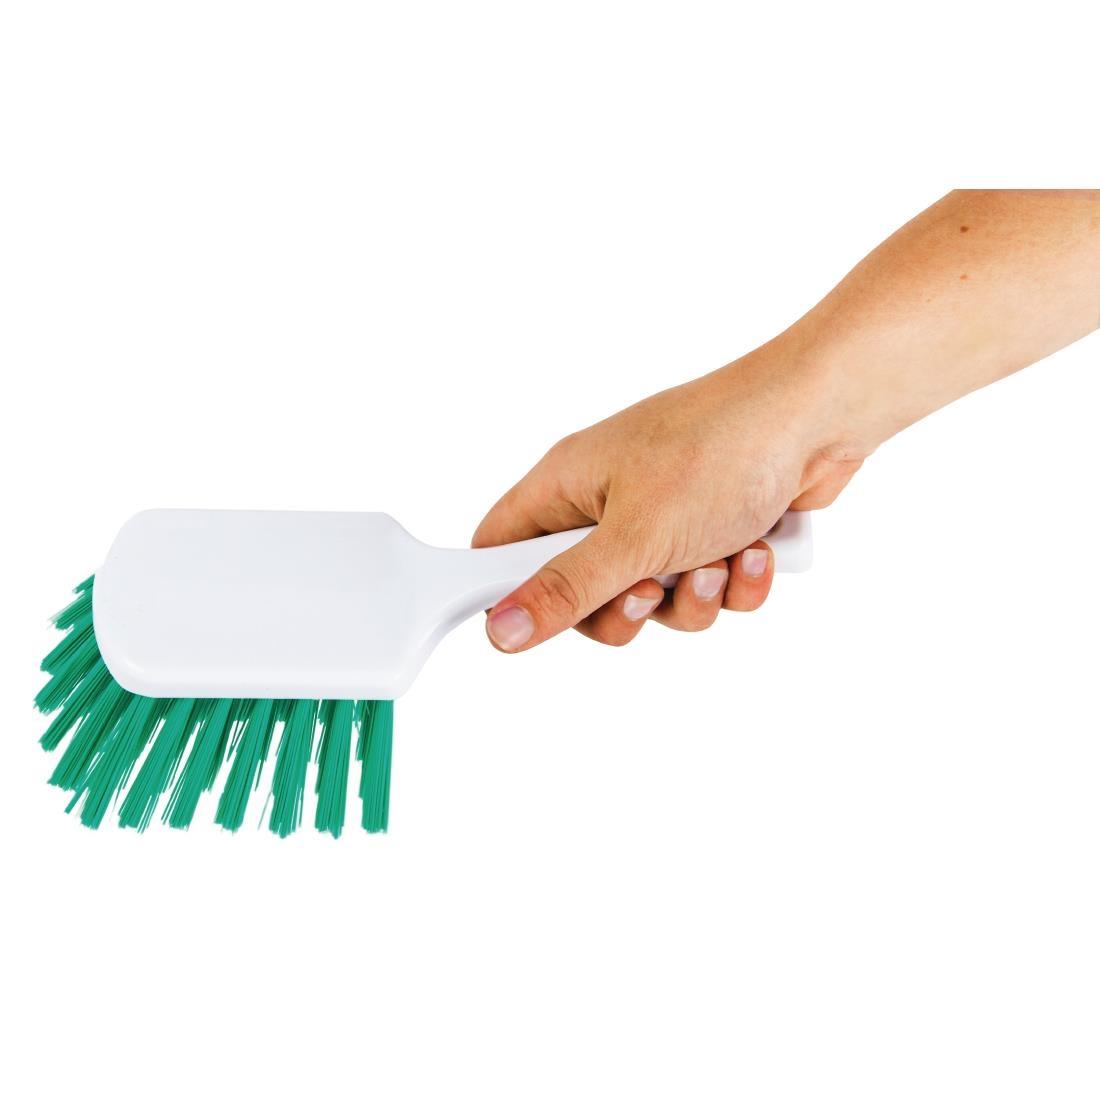 Jantex Hand Brush Green - L716  - 2